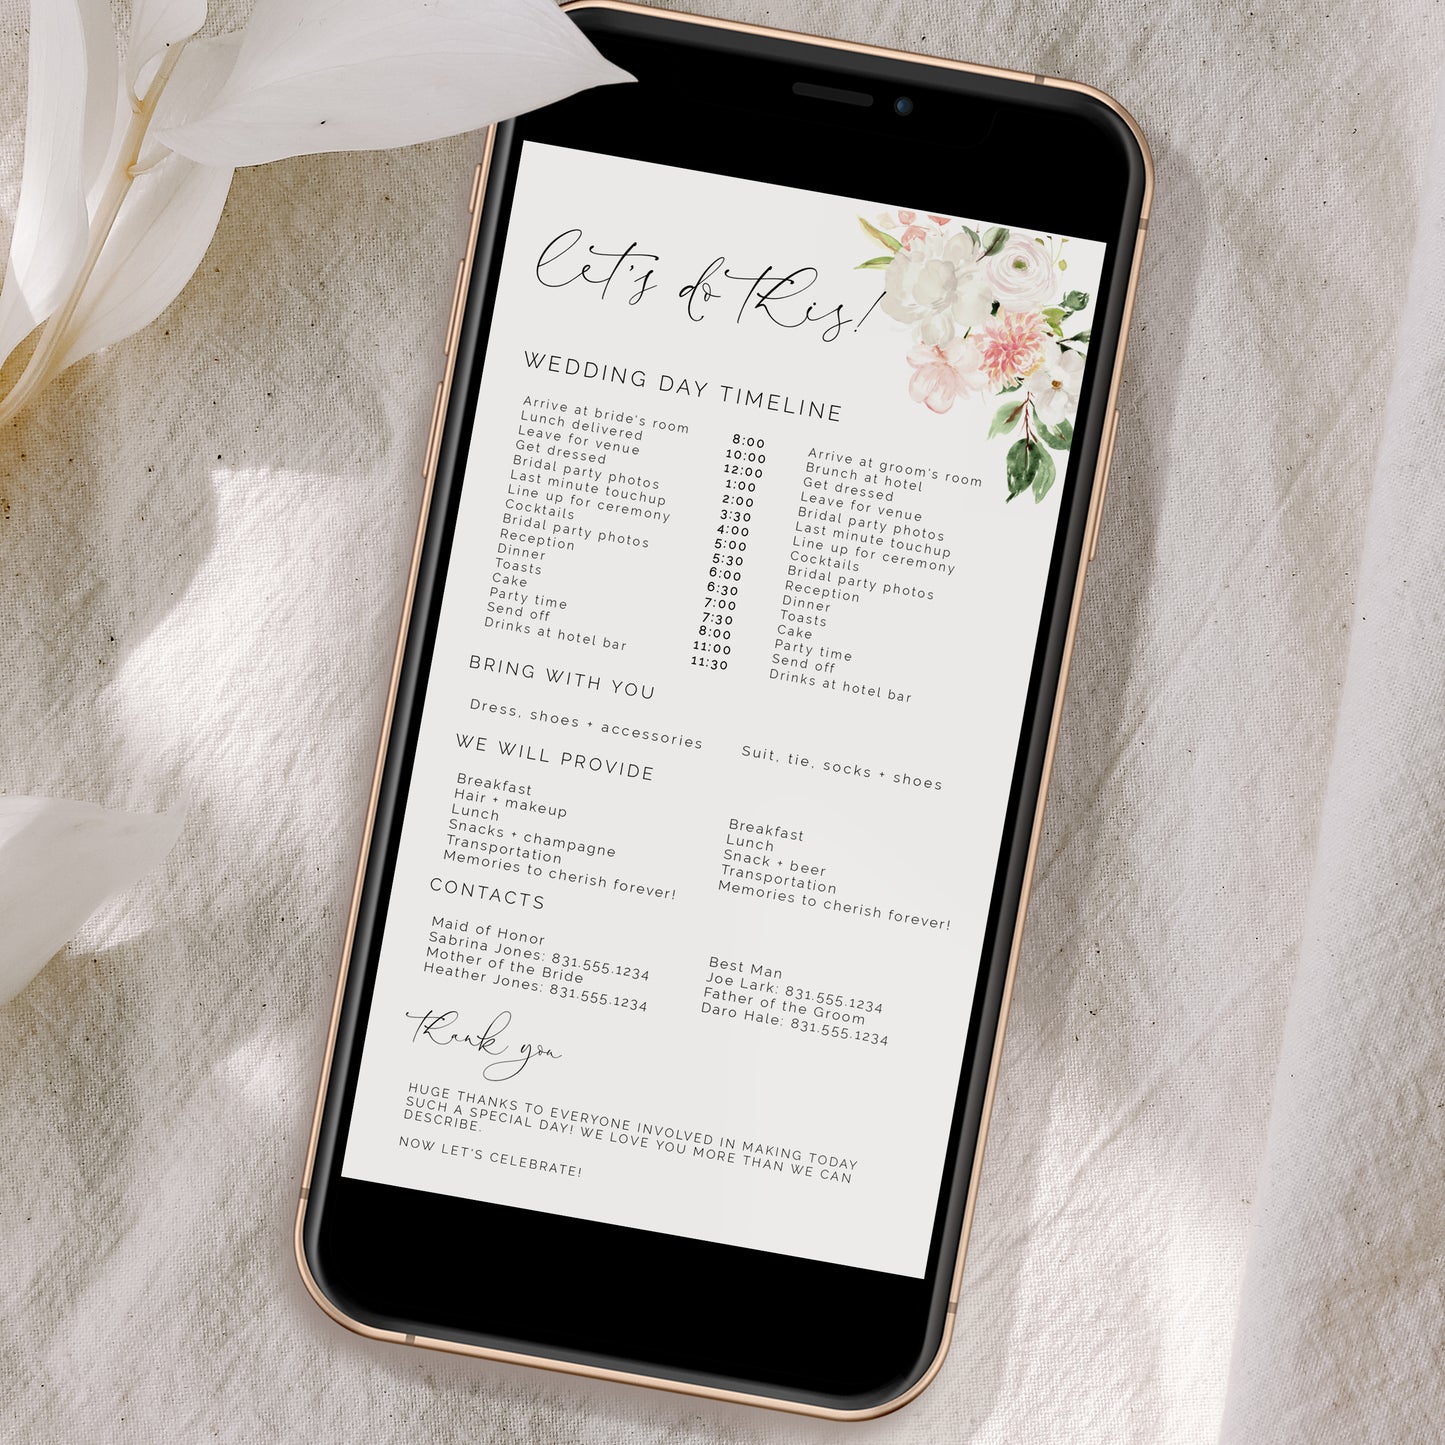 Blush Pink & White Floral Wedding Day Timeline Schedule